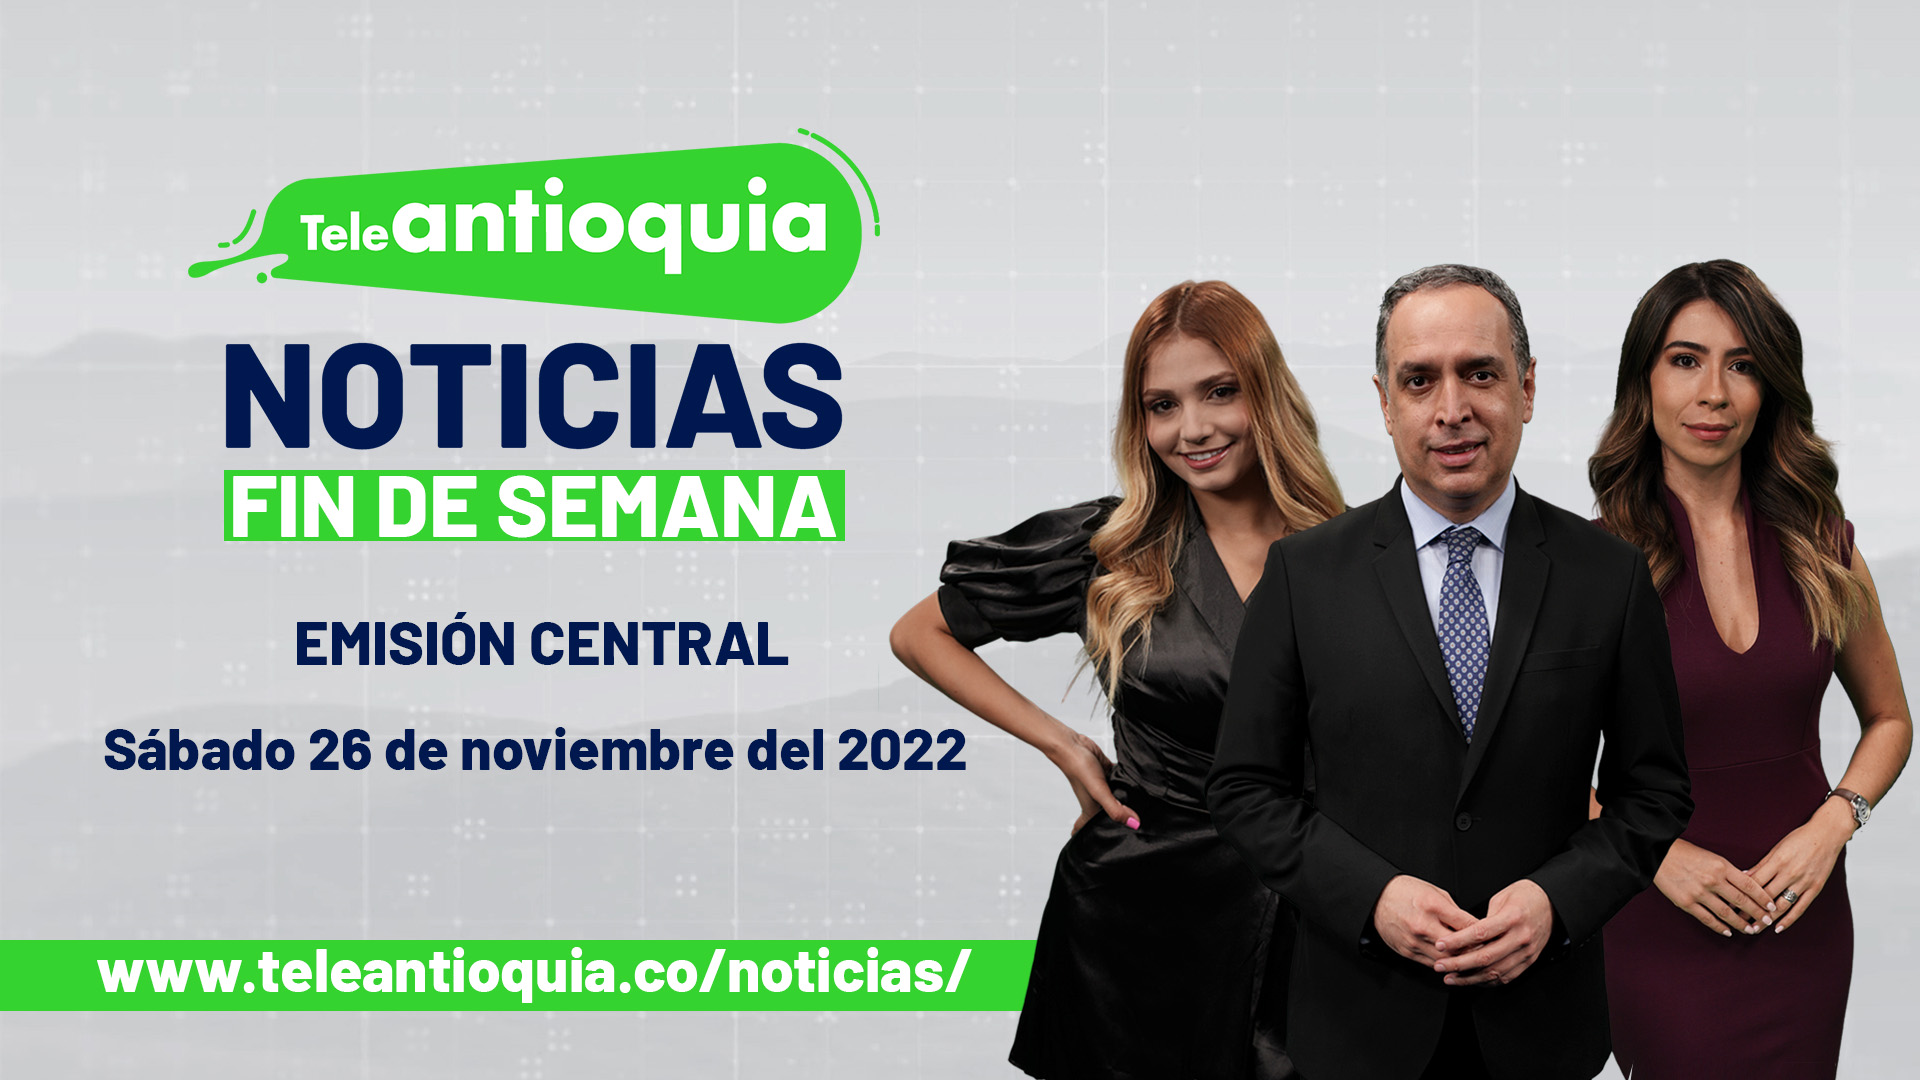 Teleantioquia Noticias - sábado 26 de noviembre del 2022 - 1:00 p.m.